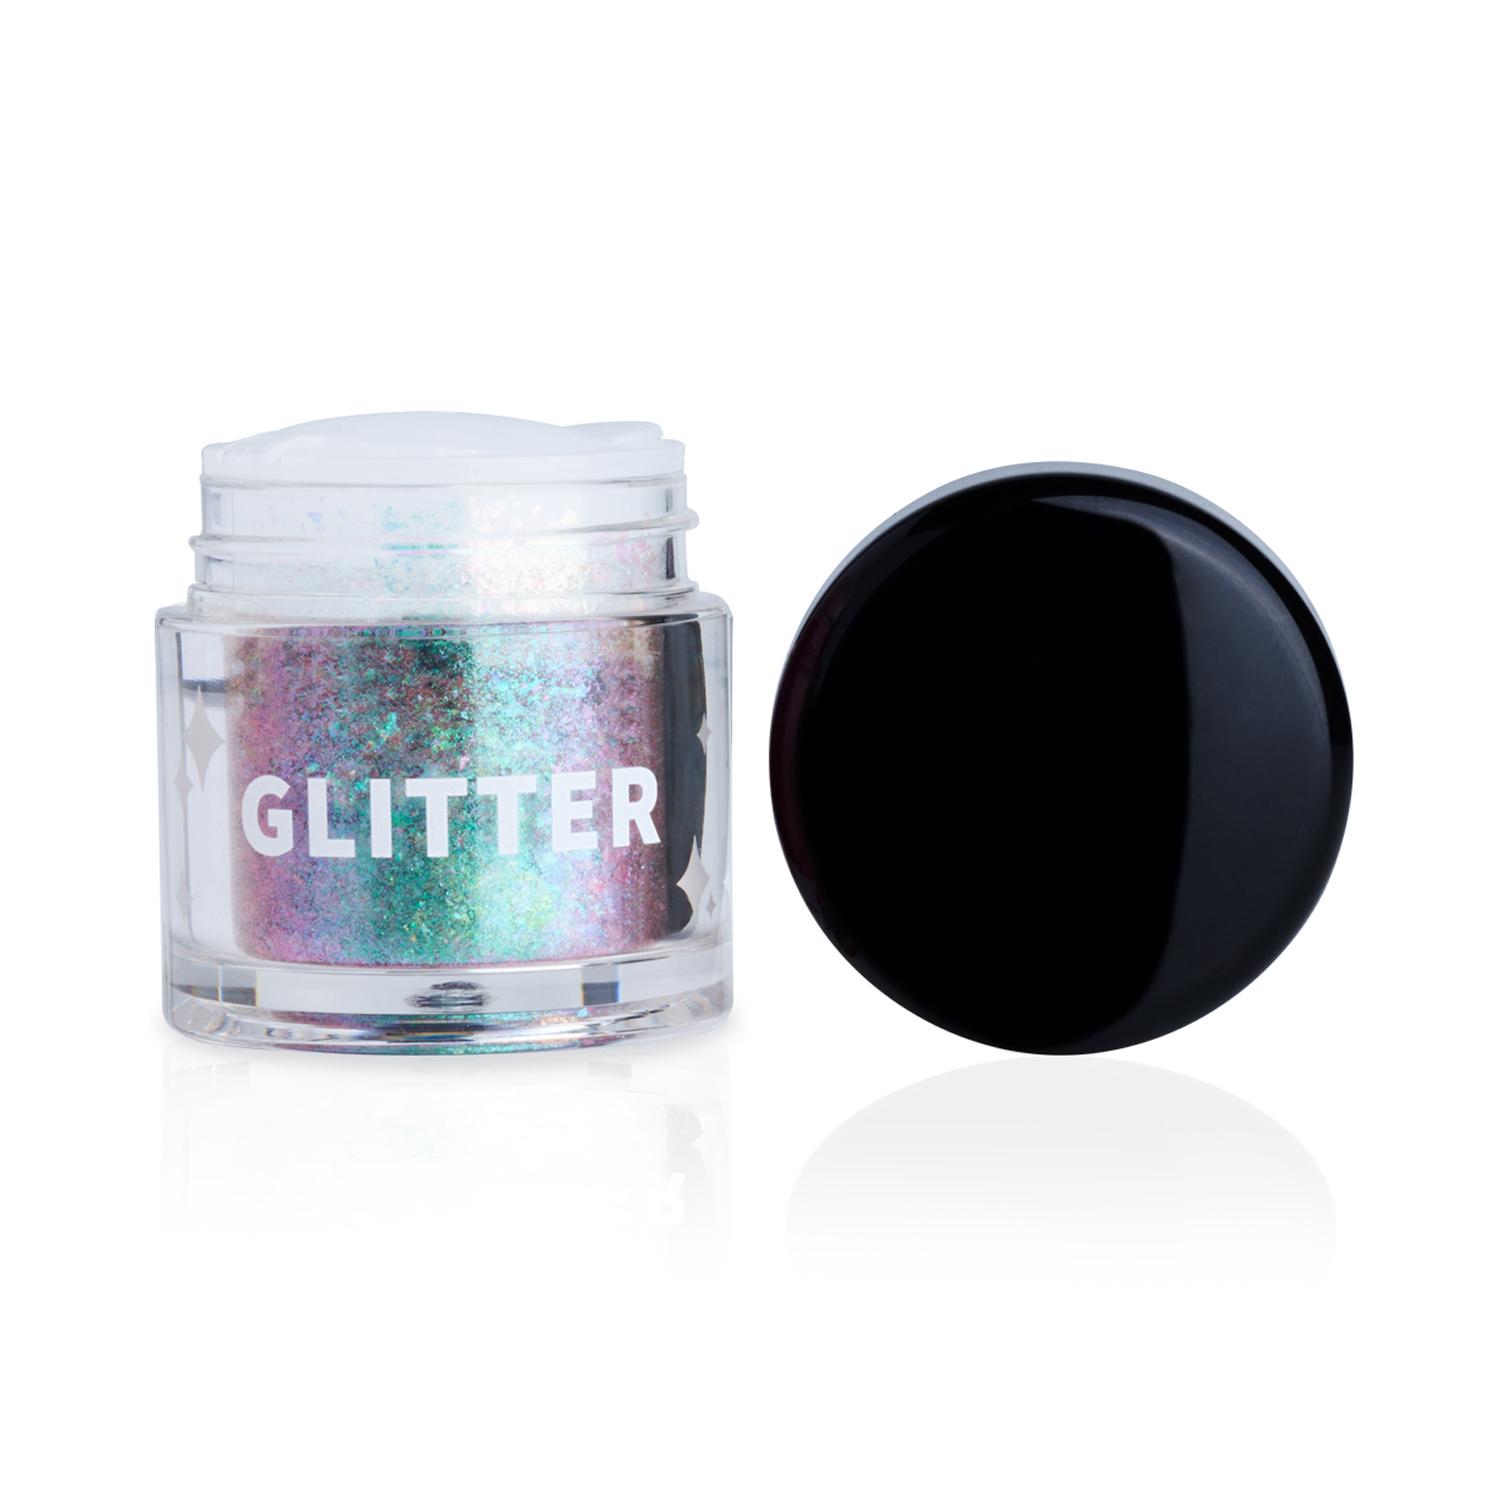 PAC Dazzle Dust Glitter Eyeshadow - Galaxy (0.25g)